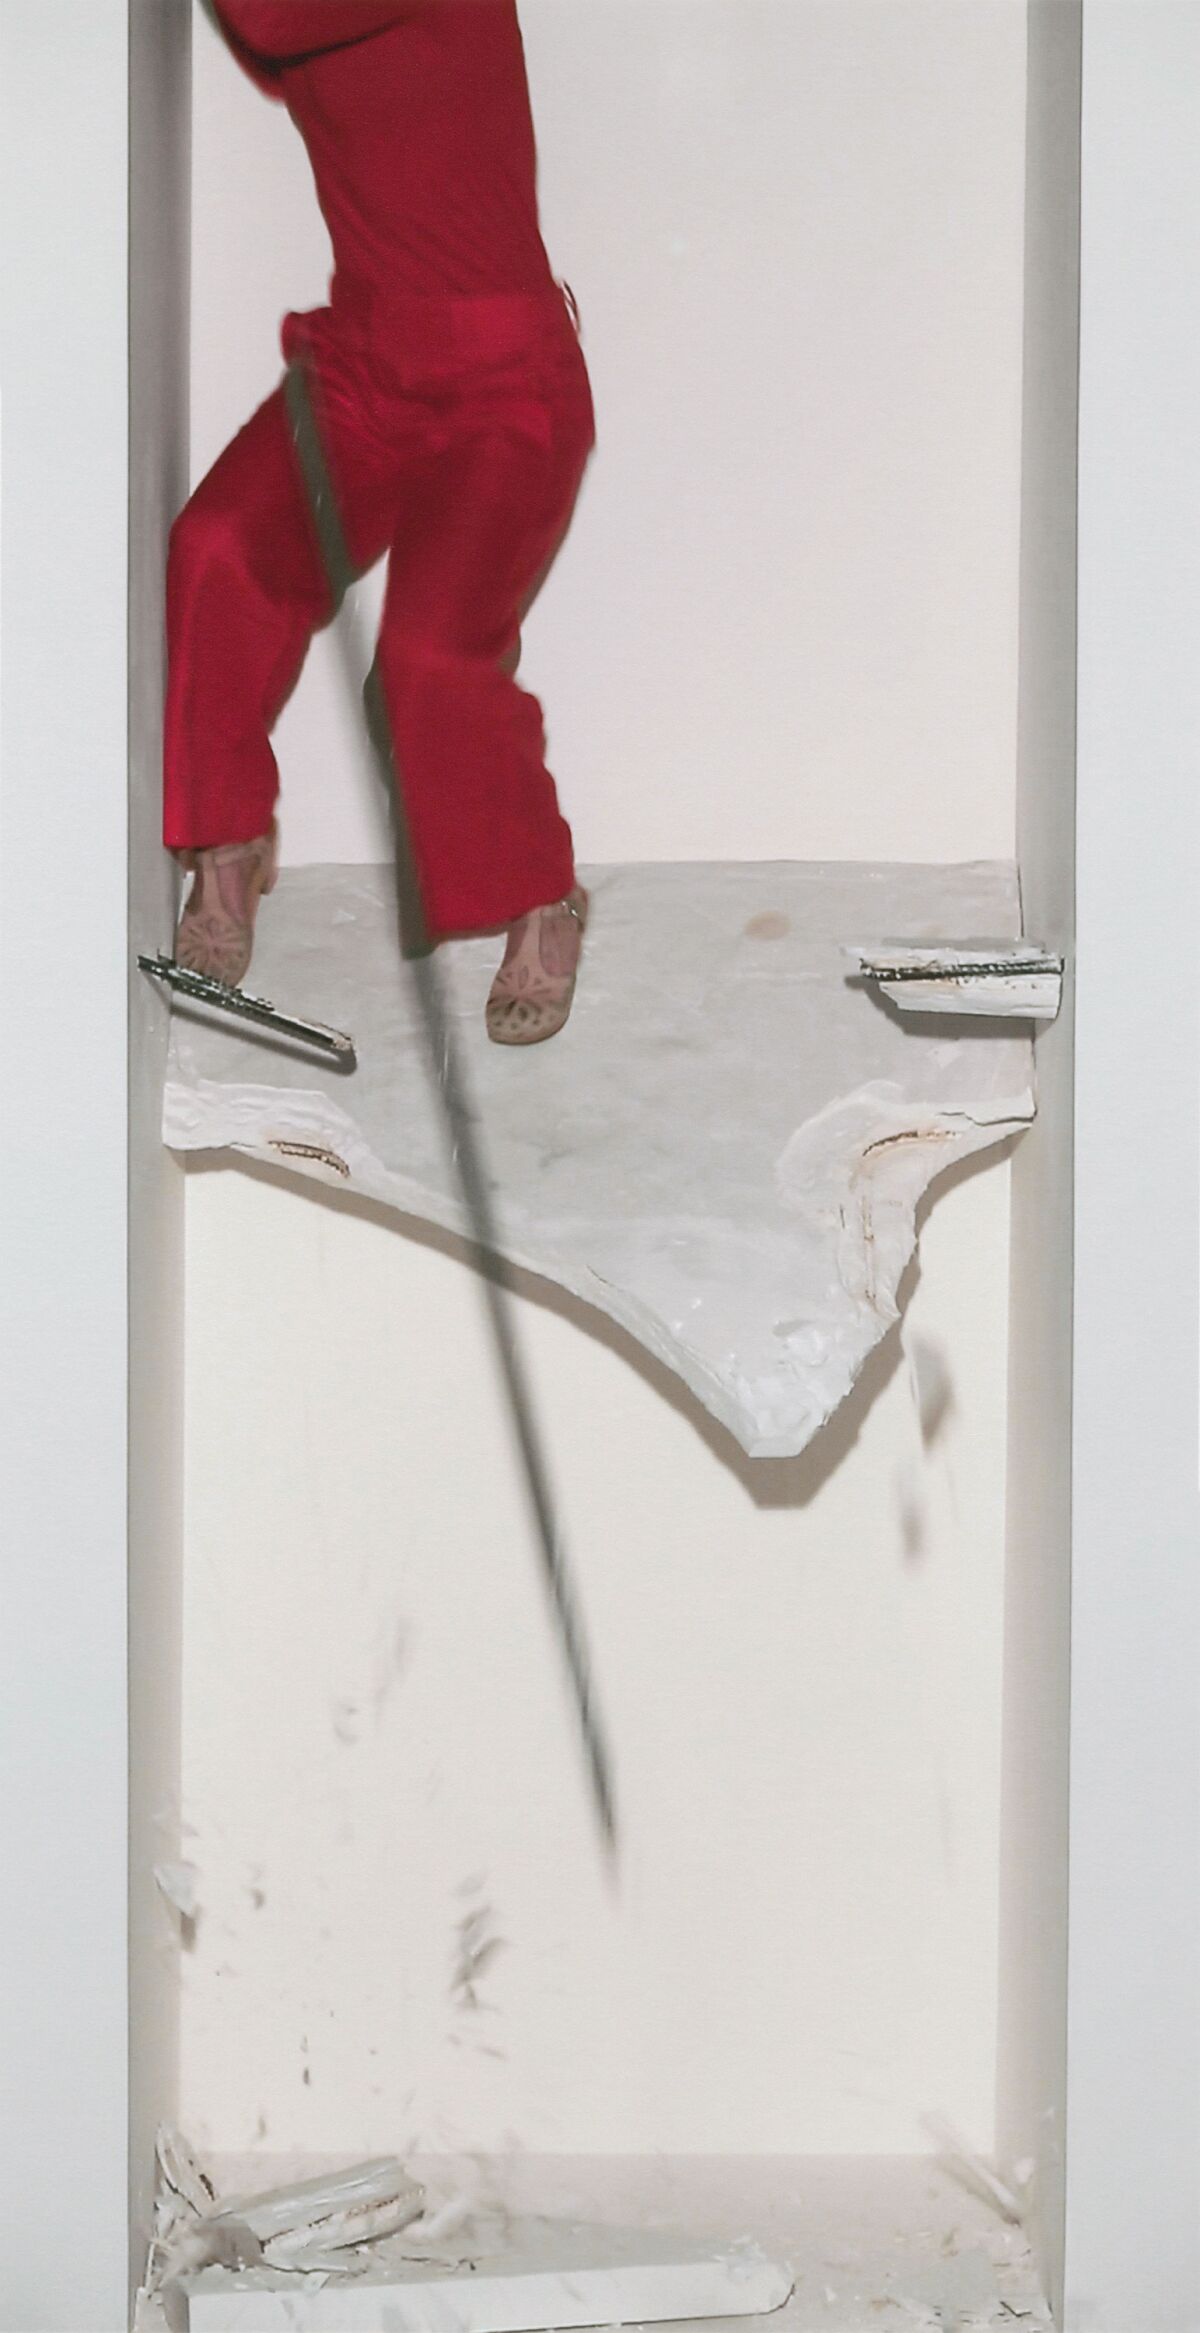 Anna Garner comes crashing through in her video portrait "Just Below".